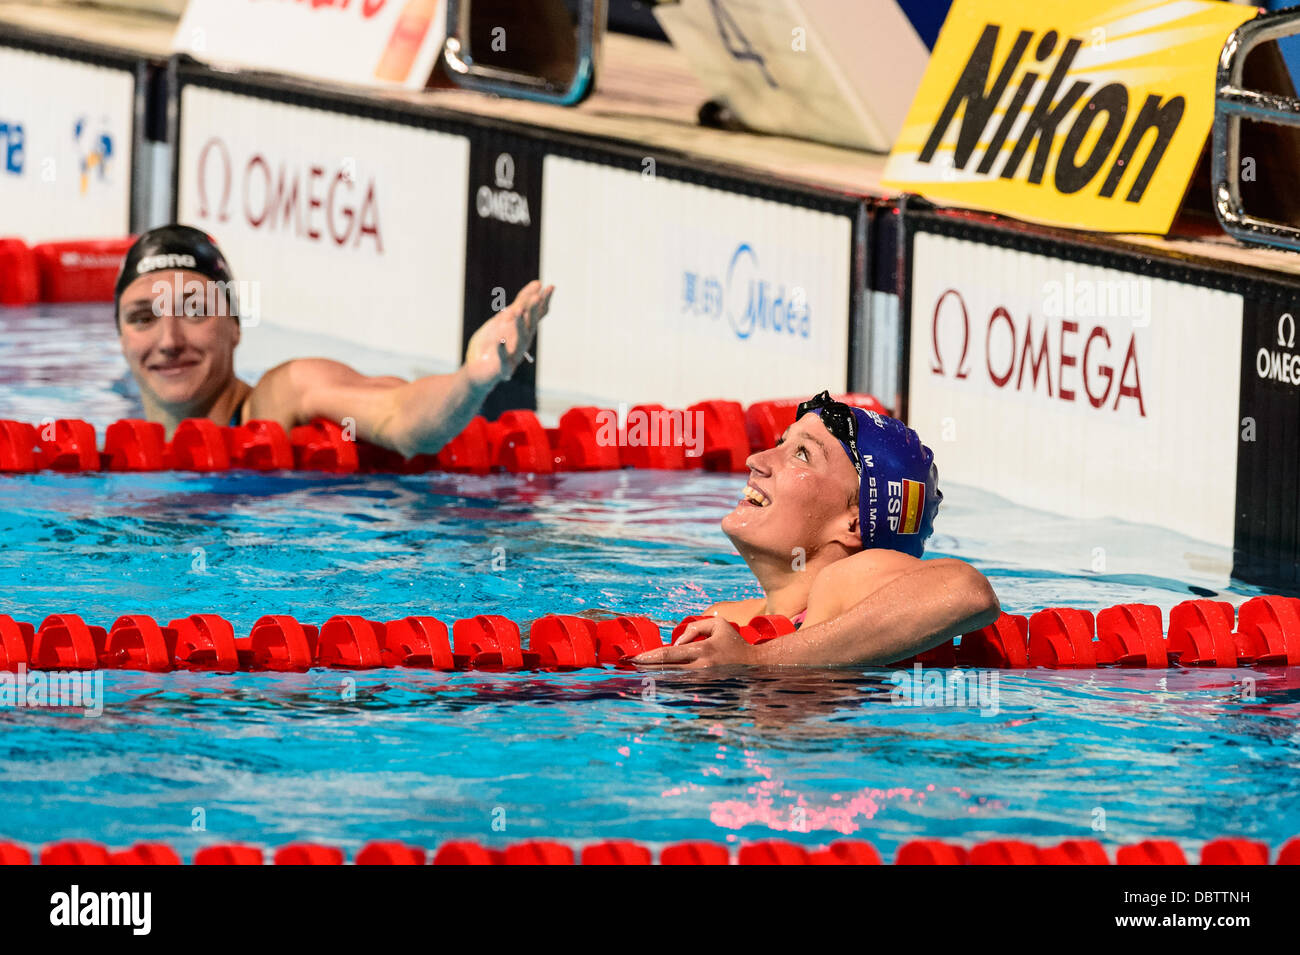 Barcelone, Espagne. Août 4th, 2013 : Spain's Mireia Belmonte Garcia vérifie les résultats de sélection après le 400m quatre nages individuel à la 15e finale des Championnats du Monde FINA à Barcelone. Credit : matthi/Alamy Live News Banque D'Images